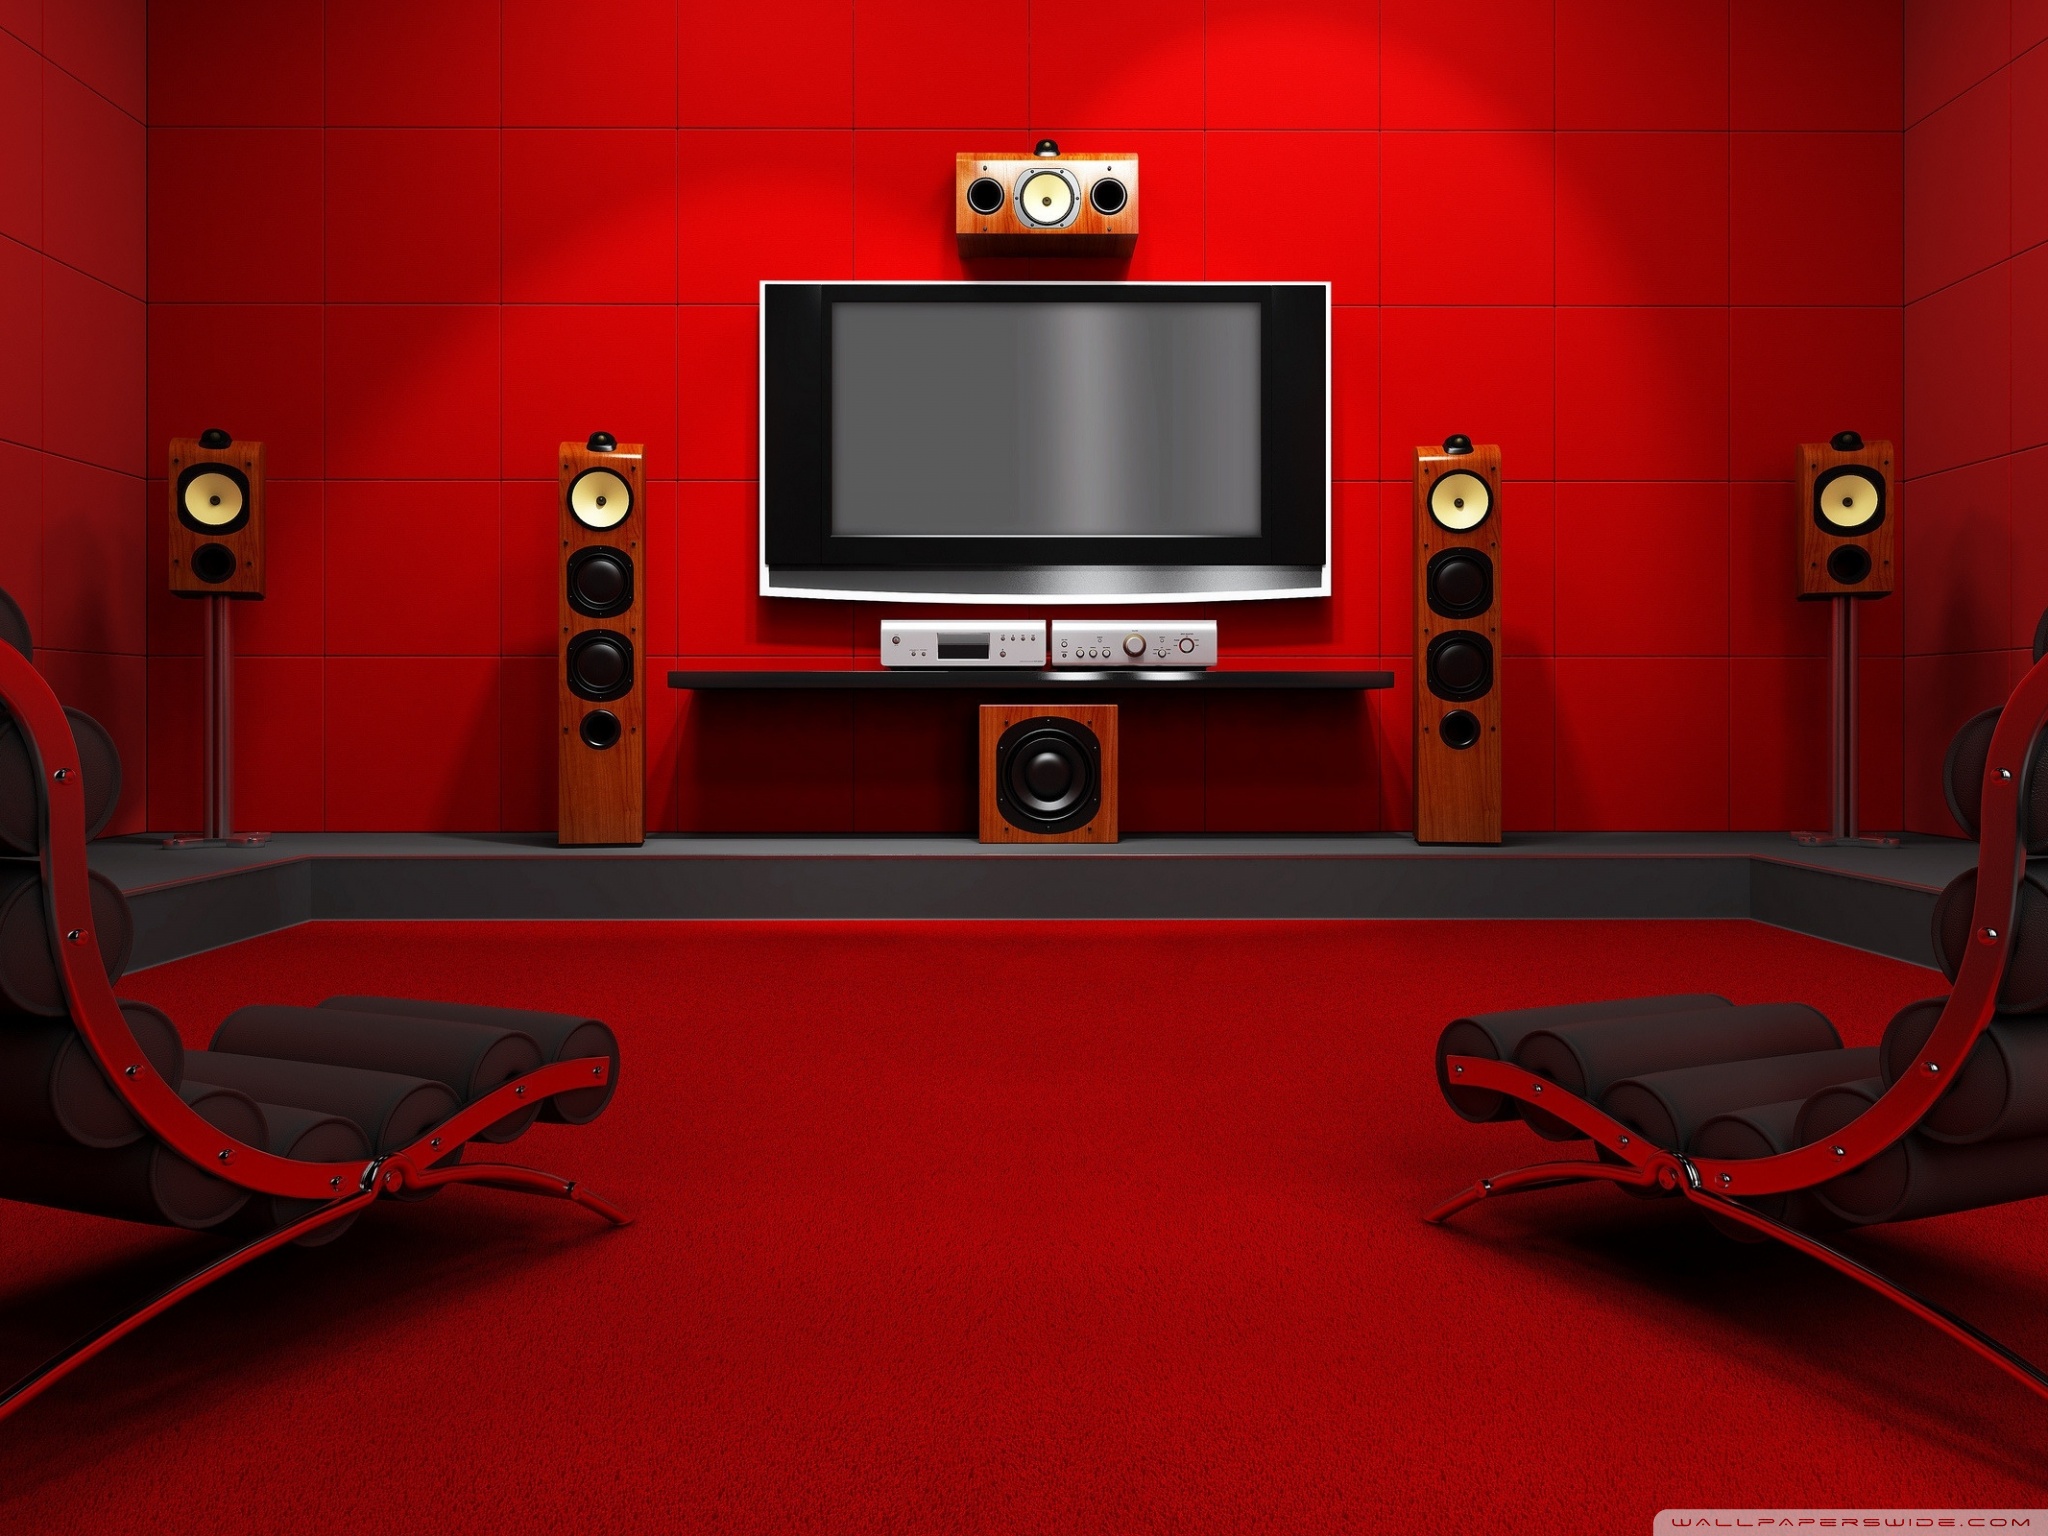 Home Media Center Ultra HD Desktop Background Wallpaper For 4k UHD